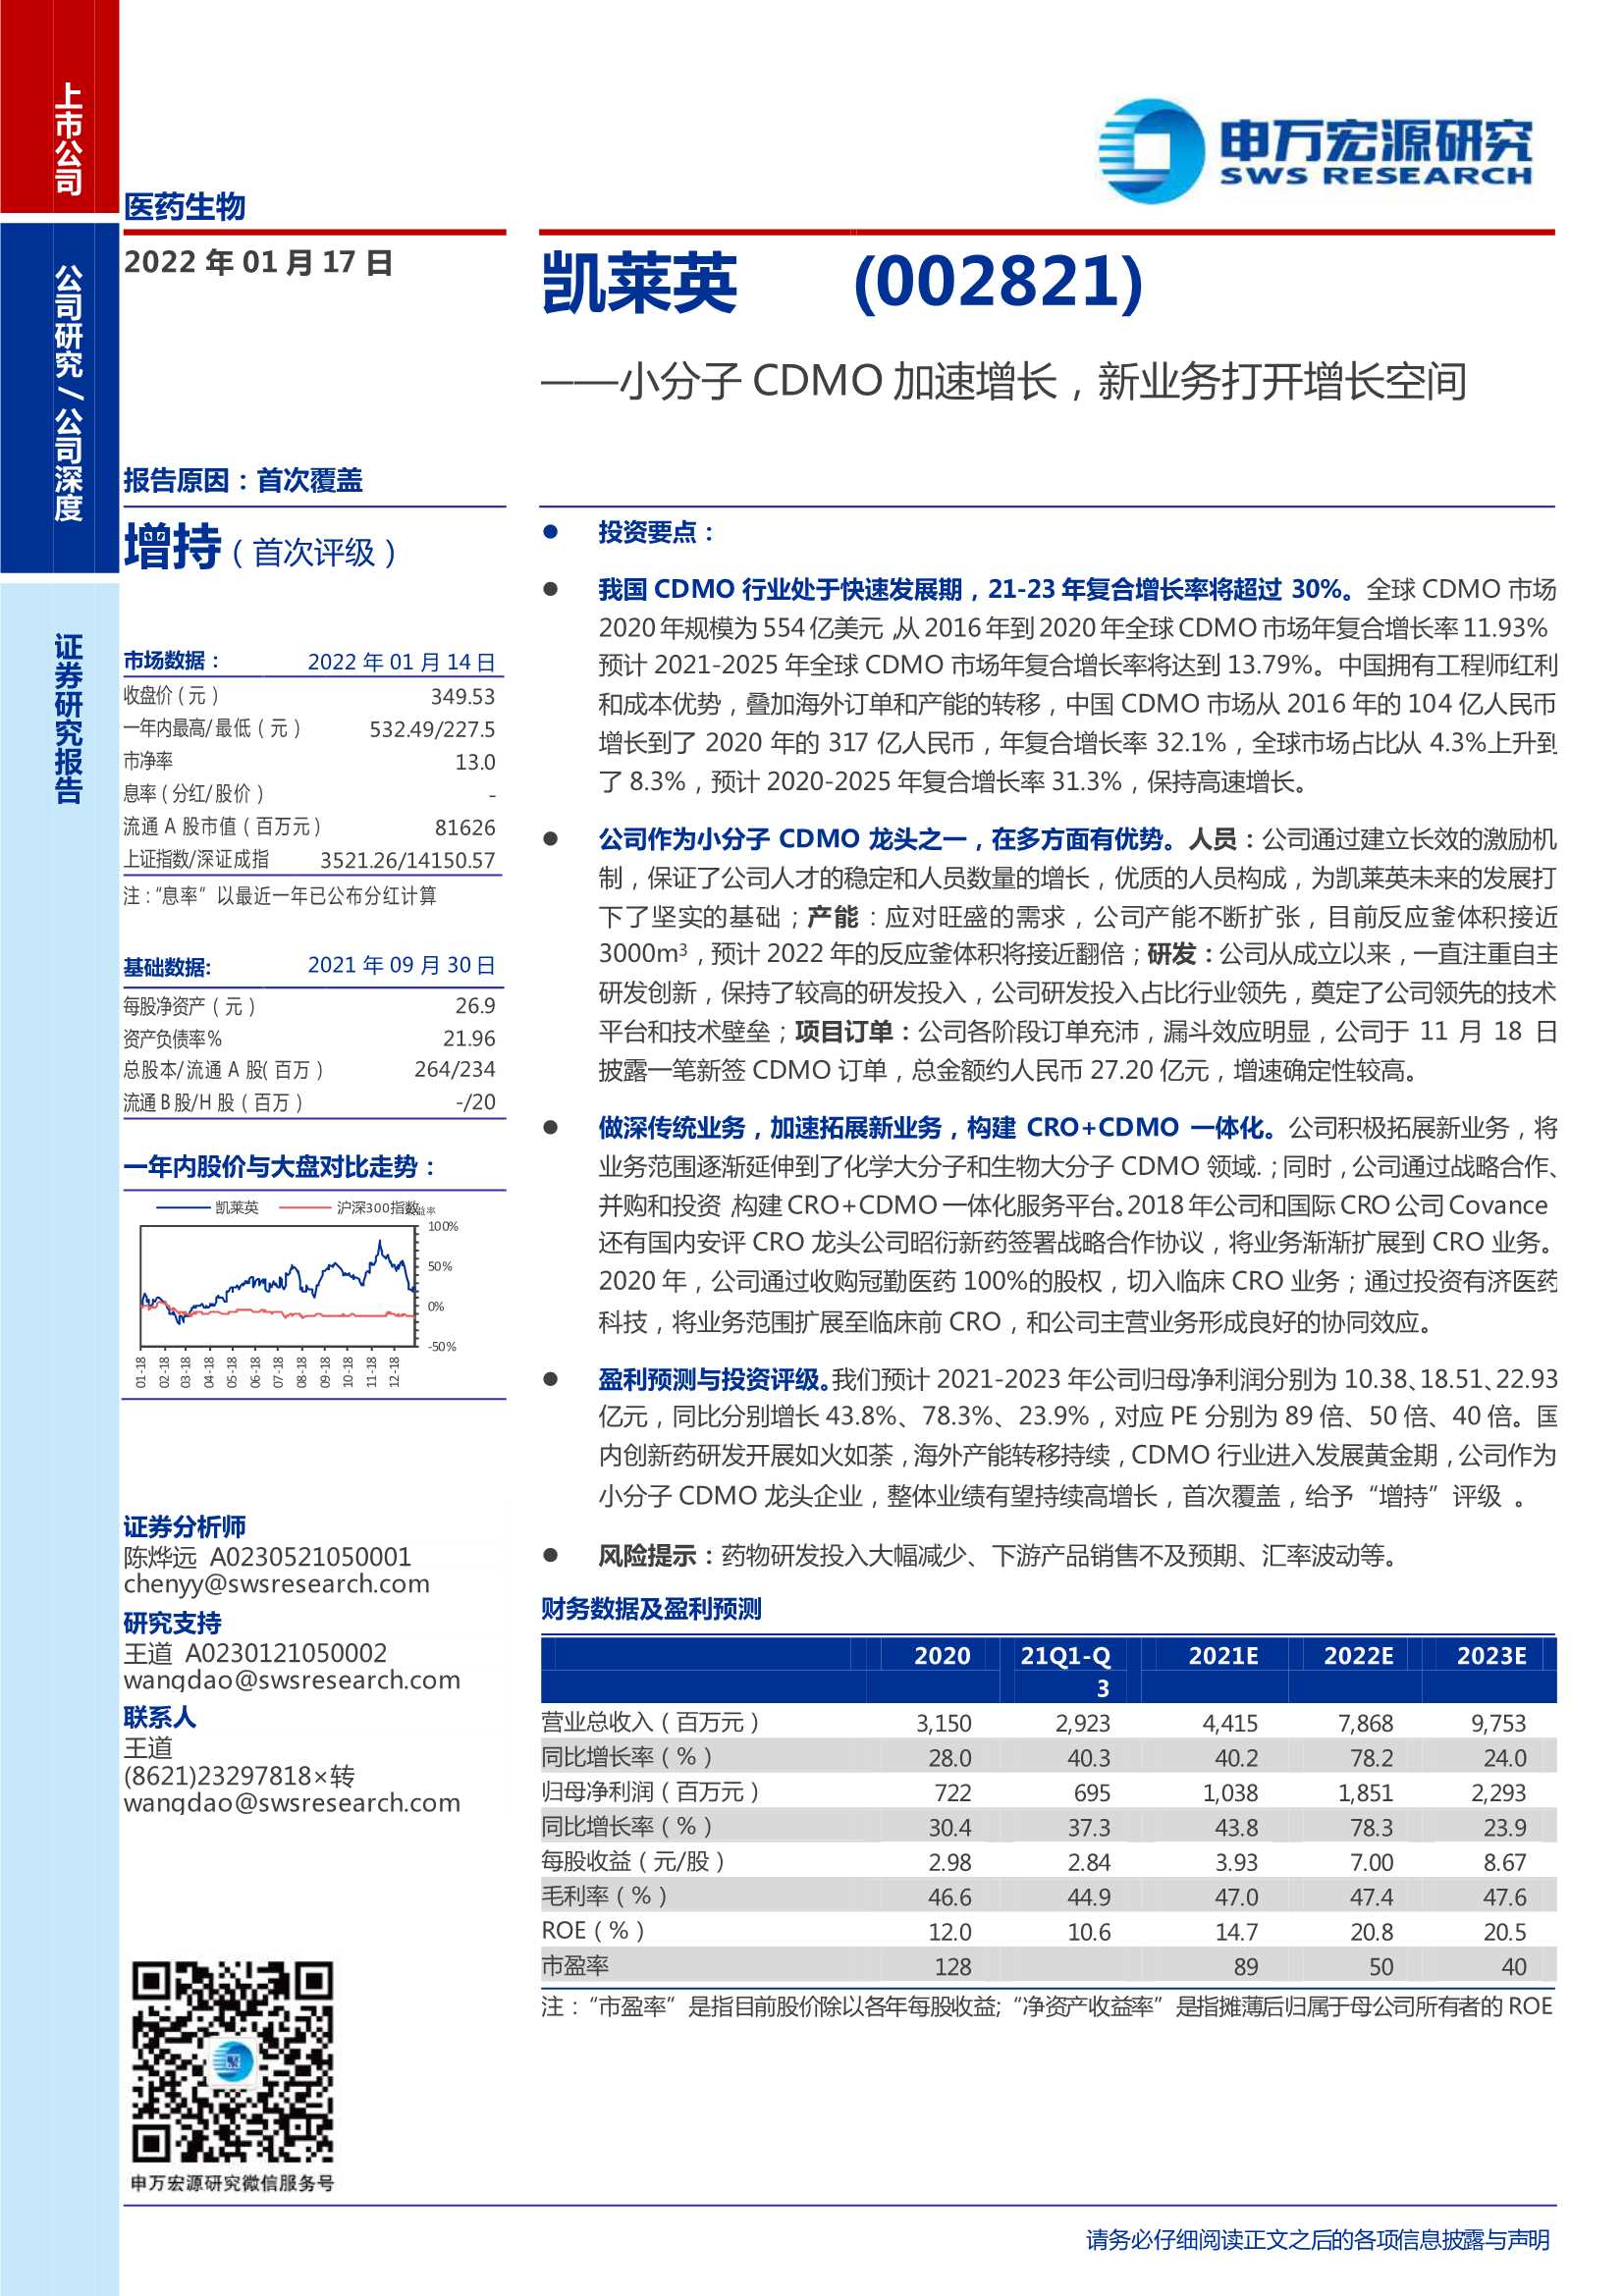 申万宏源-凯莱英-002821-小分子CDMO加速增长，新业务打开增长空间-20220117-30页